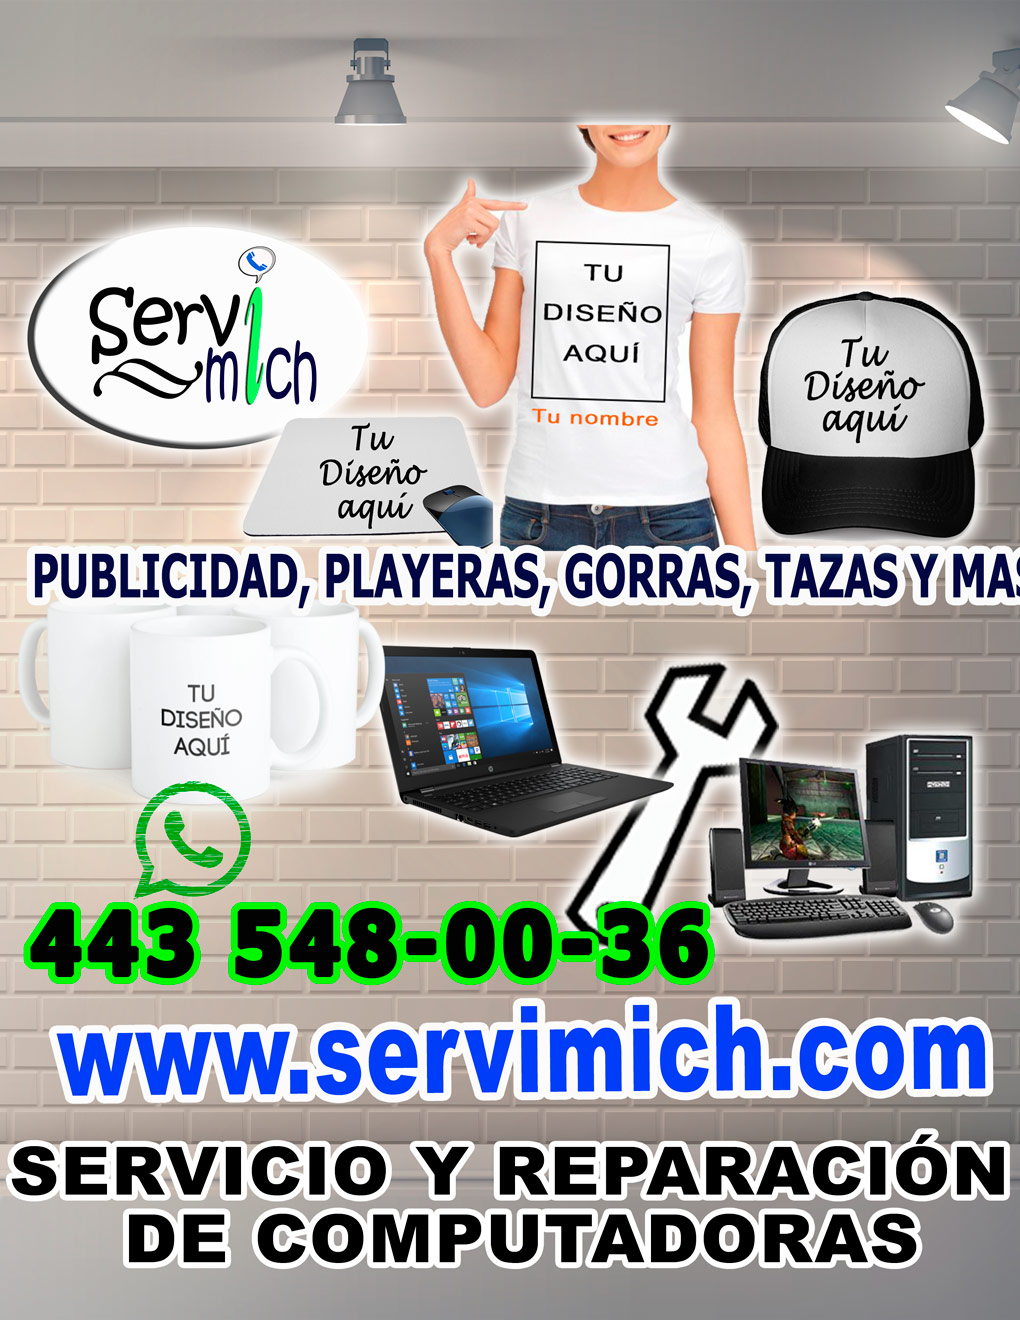 www.servimich.com